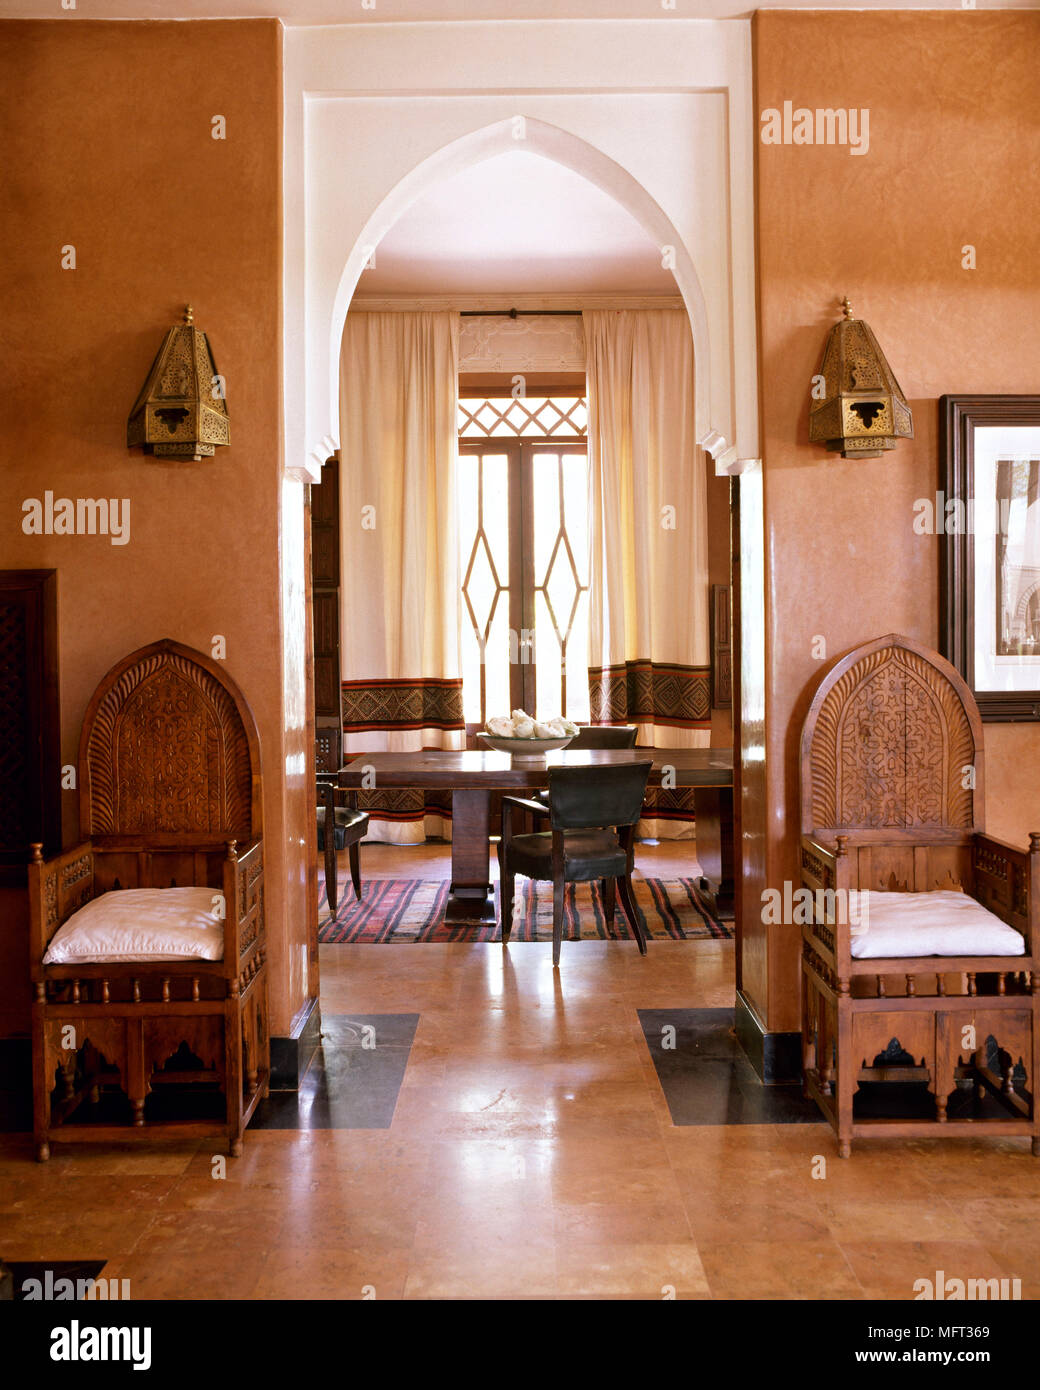 Marocchino suite hotel hotel interni camere arabo arabian etnica moresco colori ricchi di dettagli architetturali Foto Stock